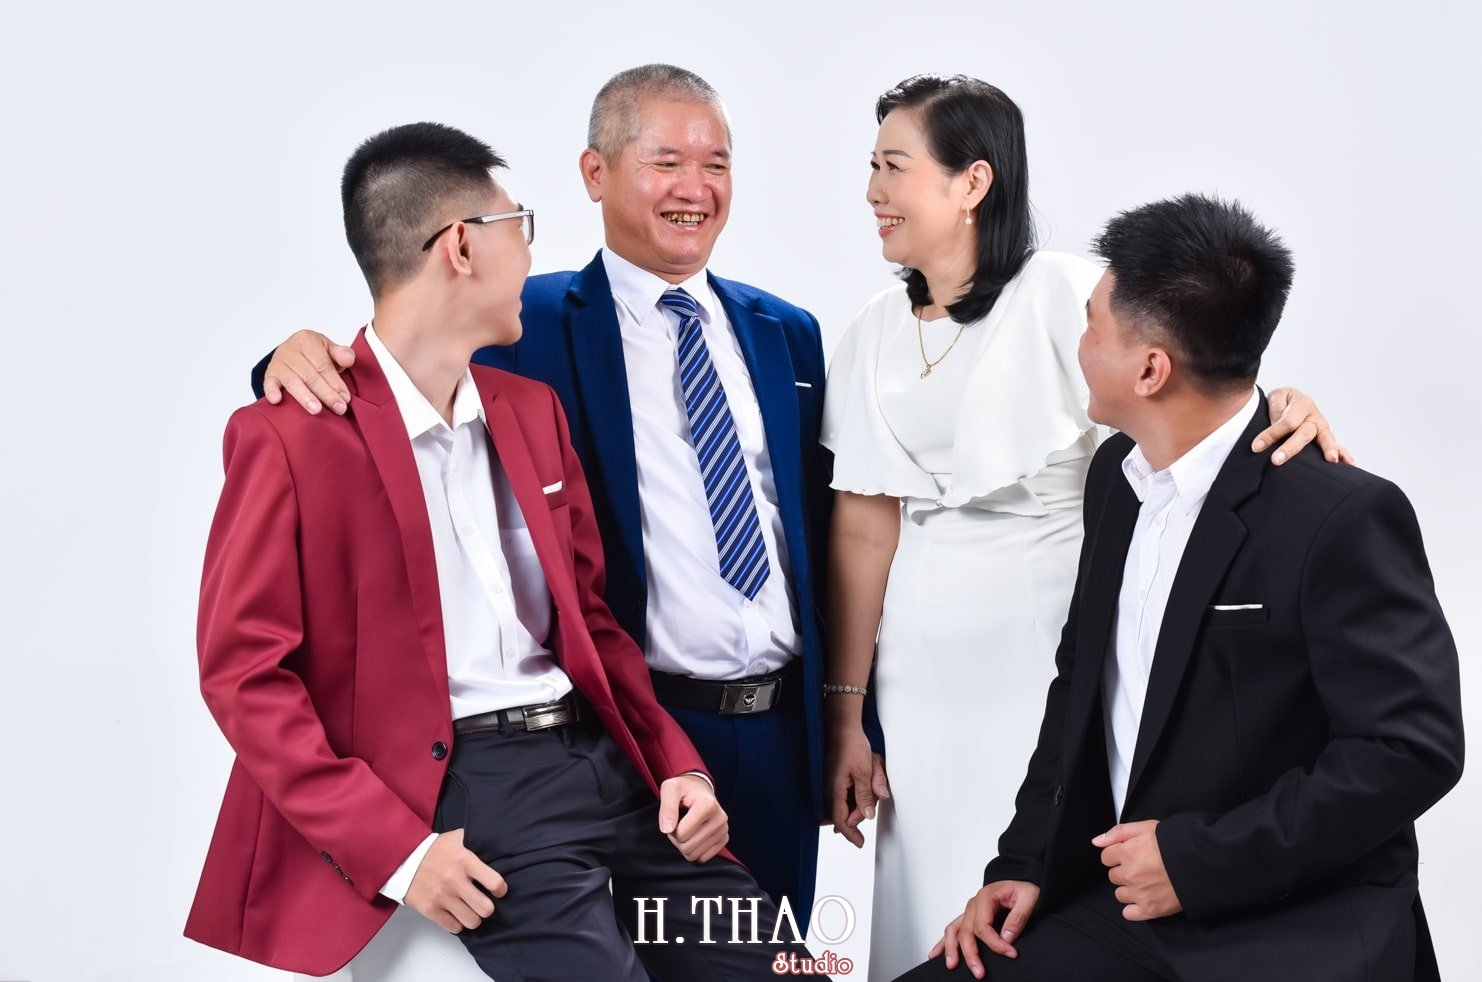 Anh gia dinh 10 min 1 - Studio chuyên chụp ảnh chân dung gia đình đẹp ở Tp.HCM- HThao Studio